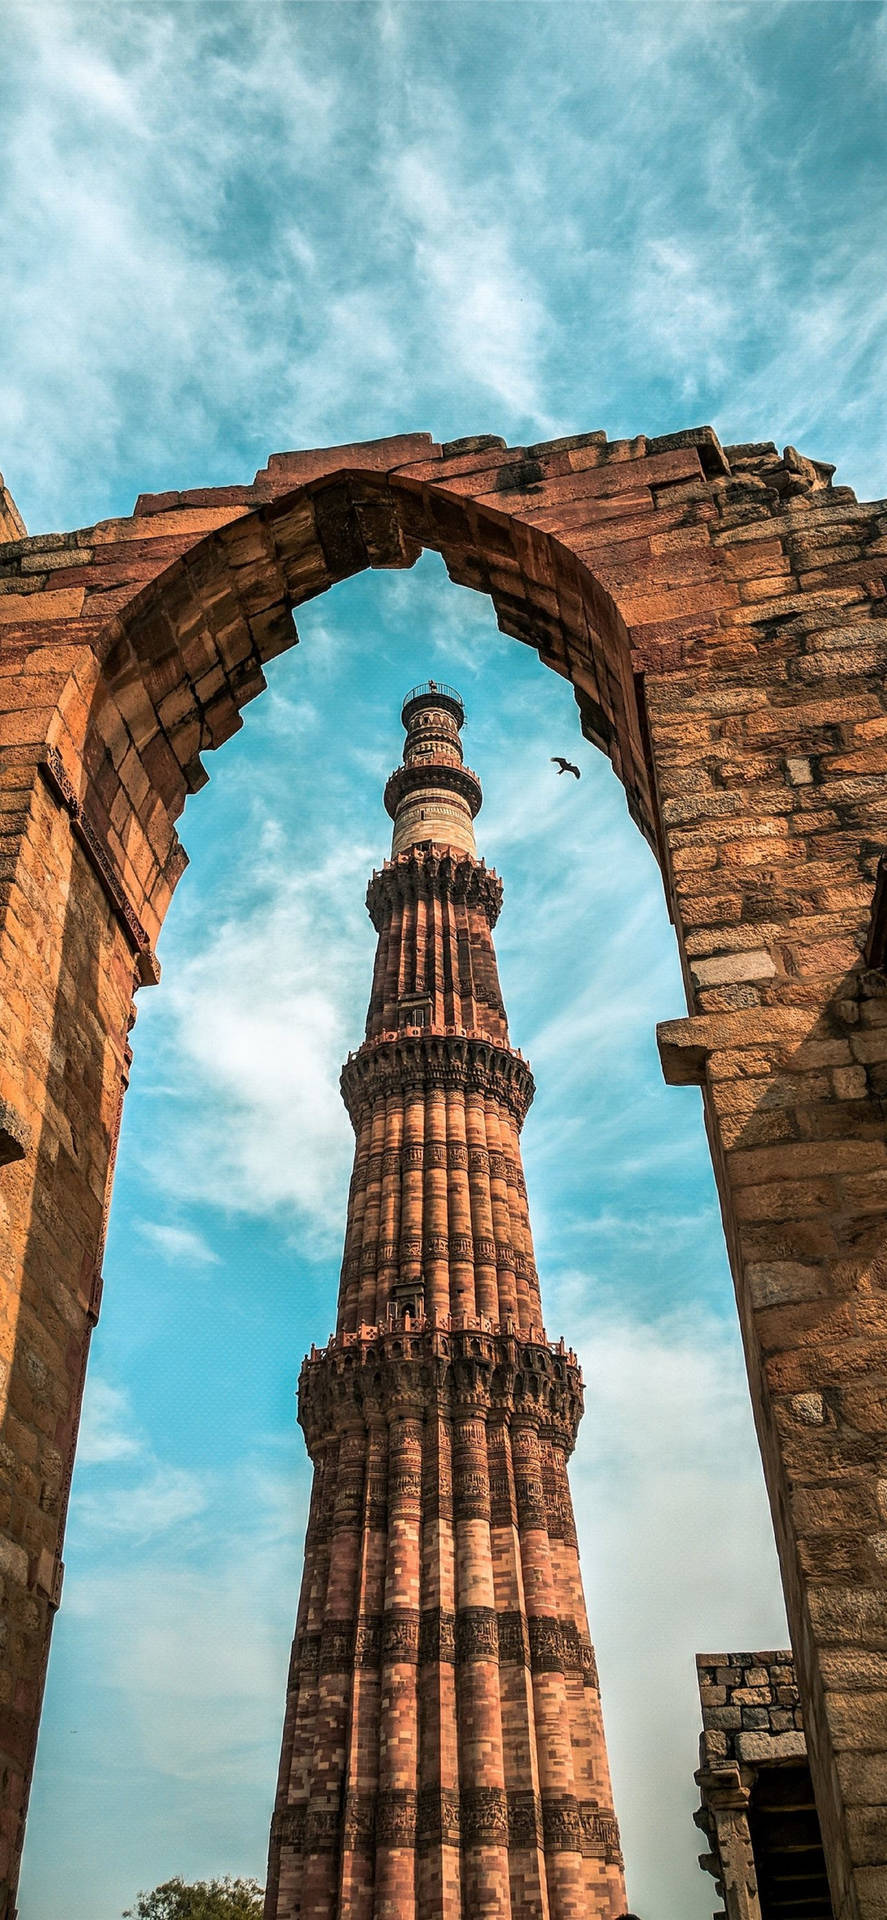 Delhi Qutub Minar Arch Picture